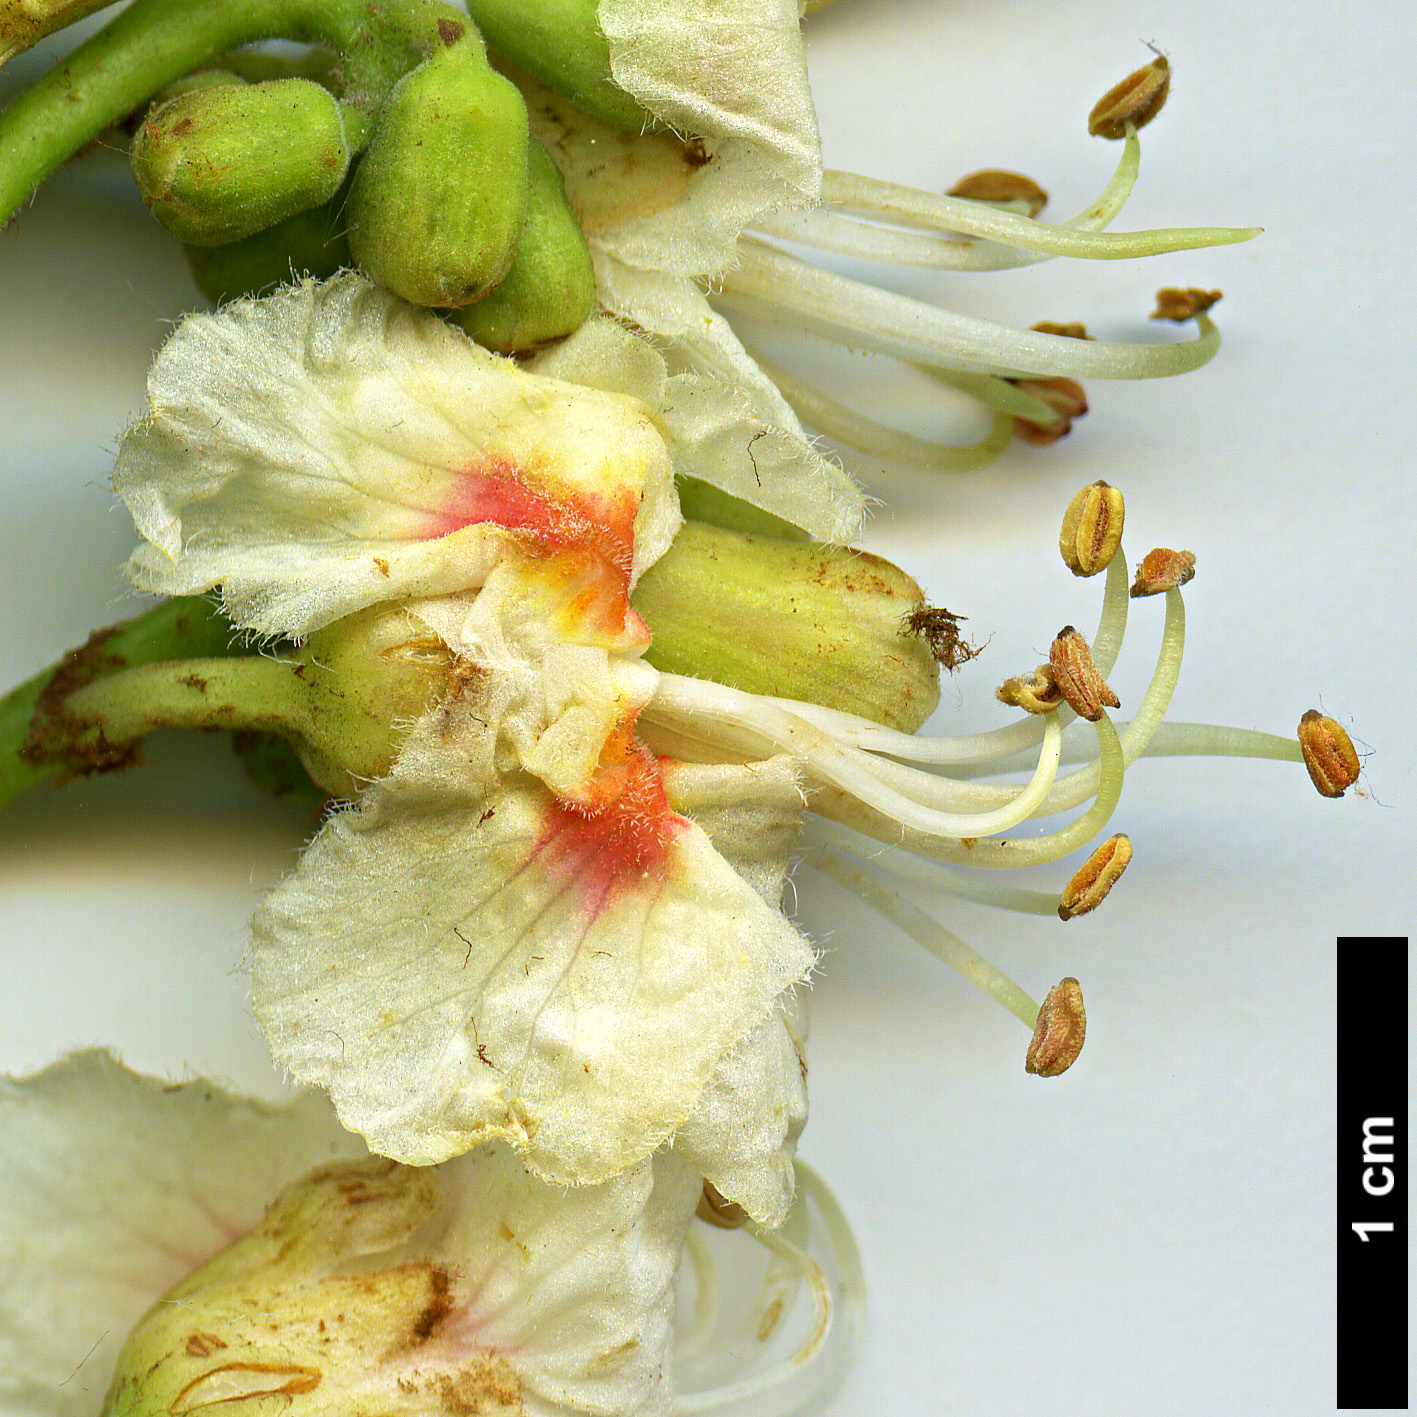 High resolution image: Family: Sapindaceae - Genus: Aesculus - Taxon: hippocastanum